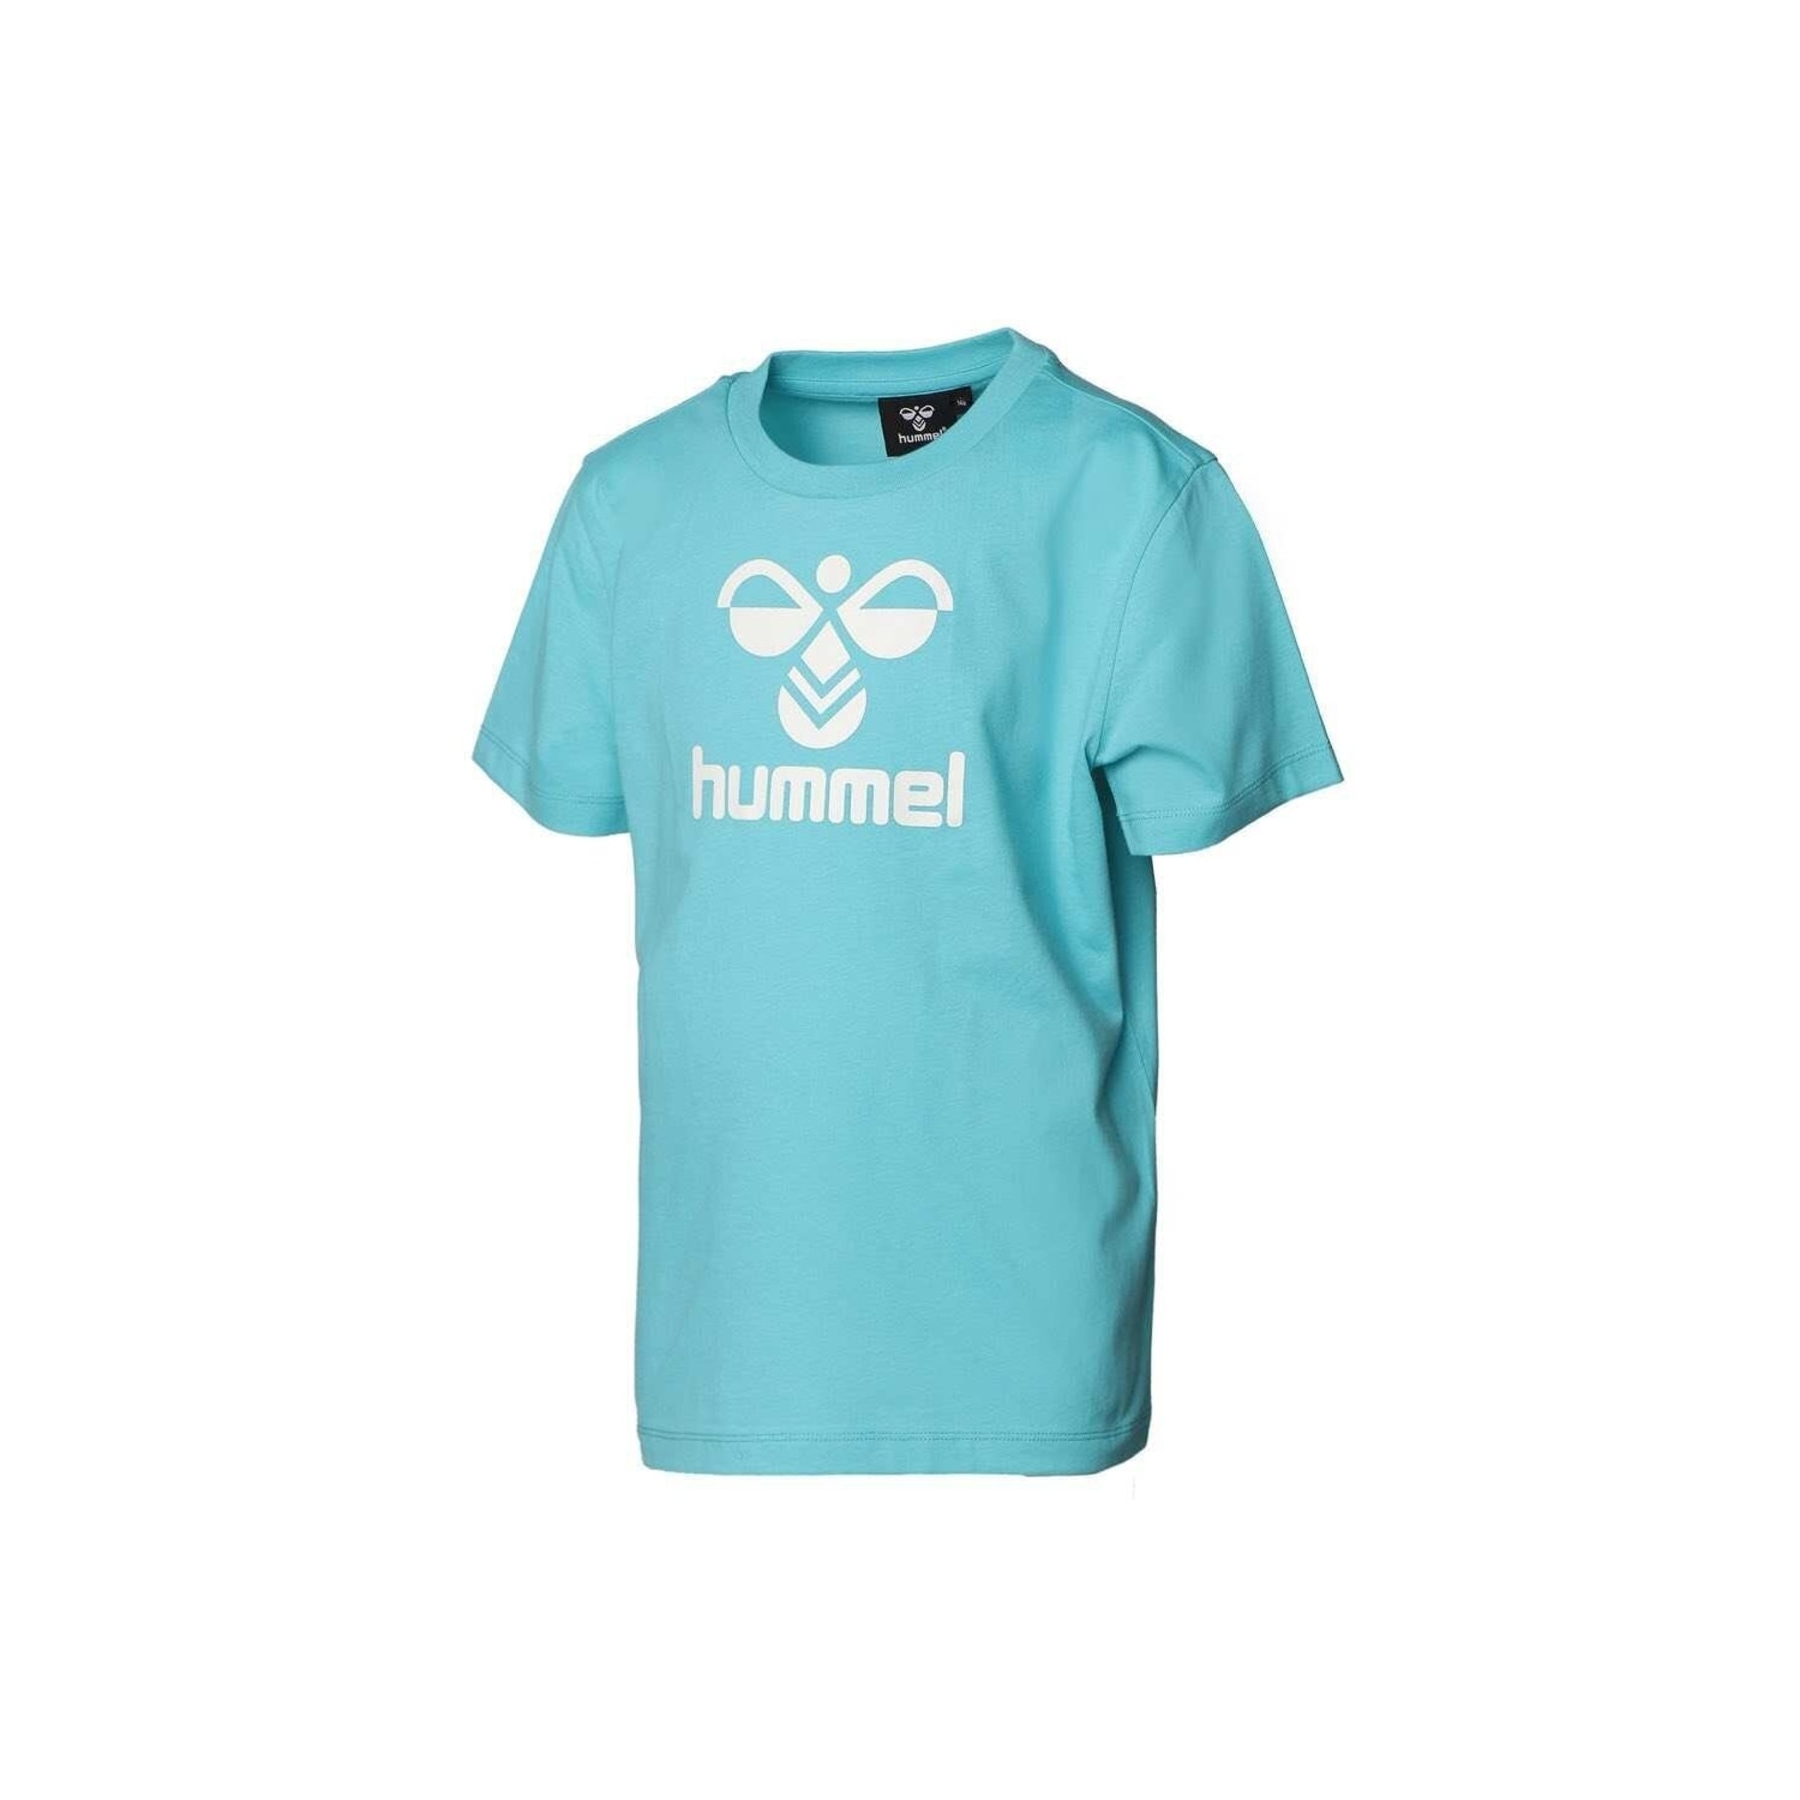 Hummel Lauren Tişört Mavi Spor Ayakkabı (911653-7966)